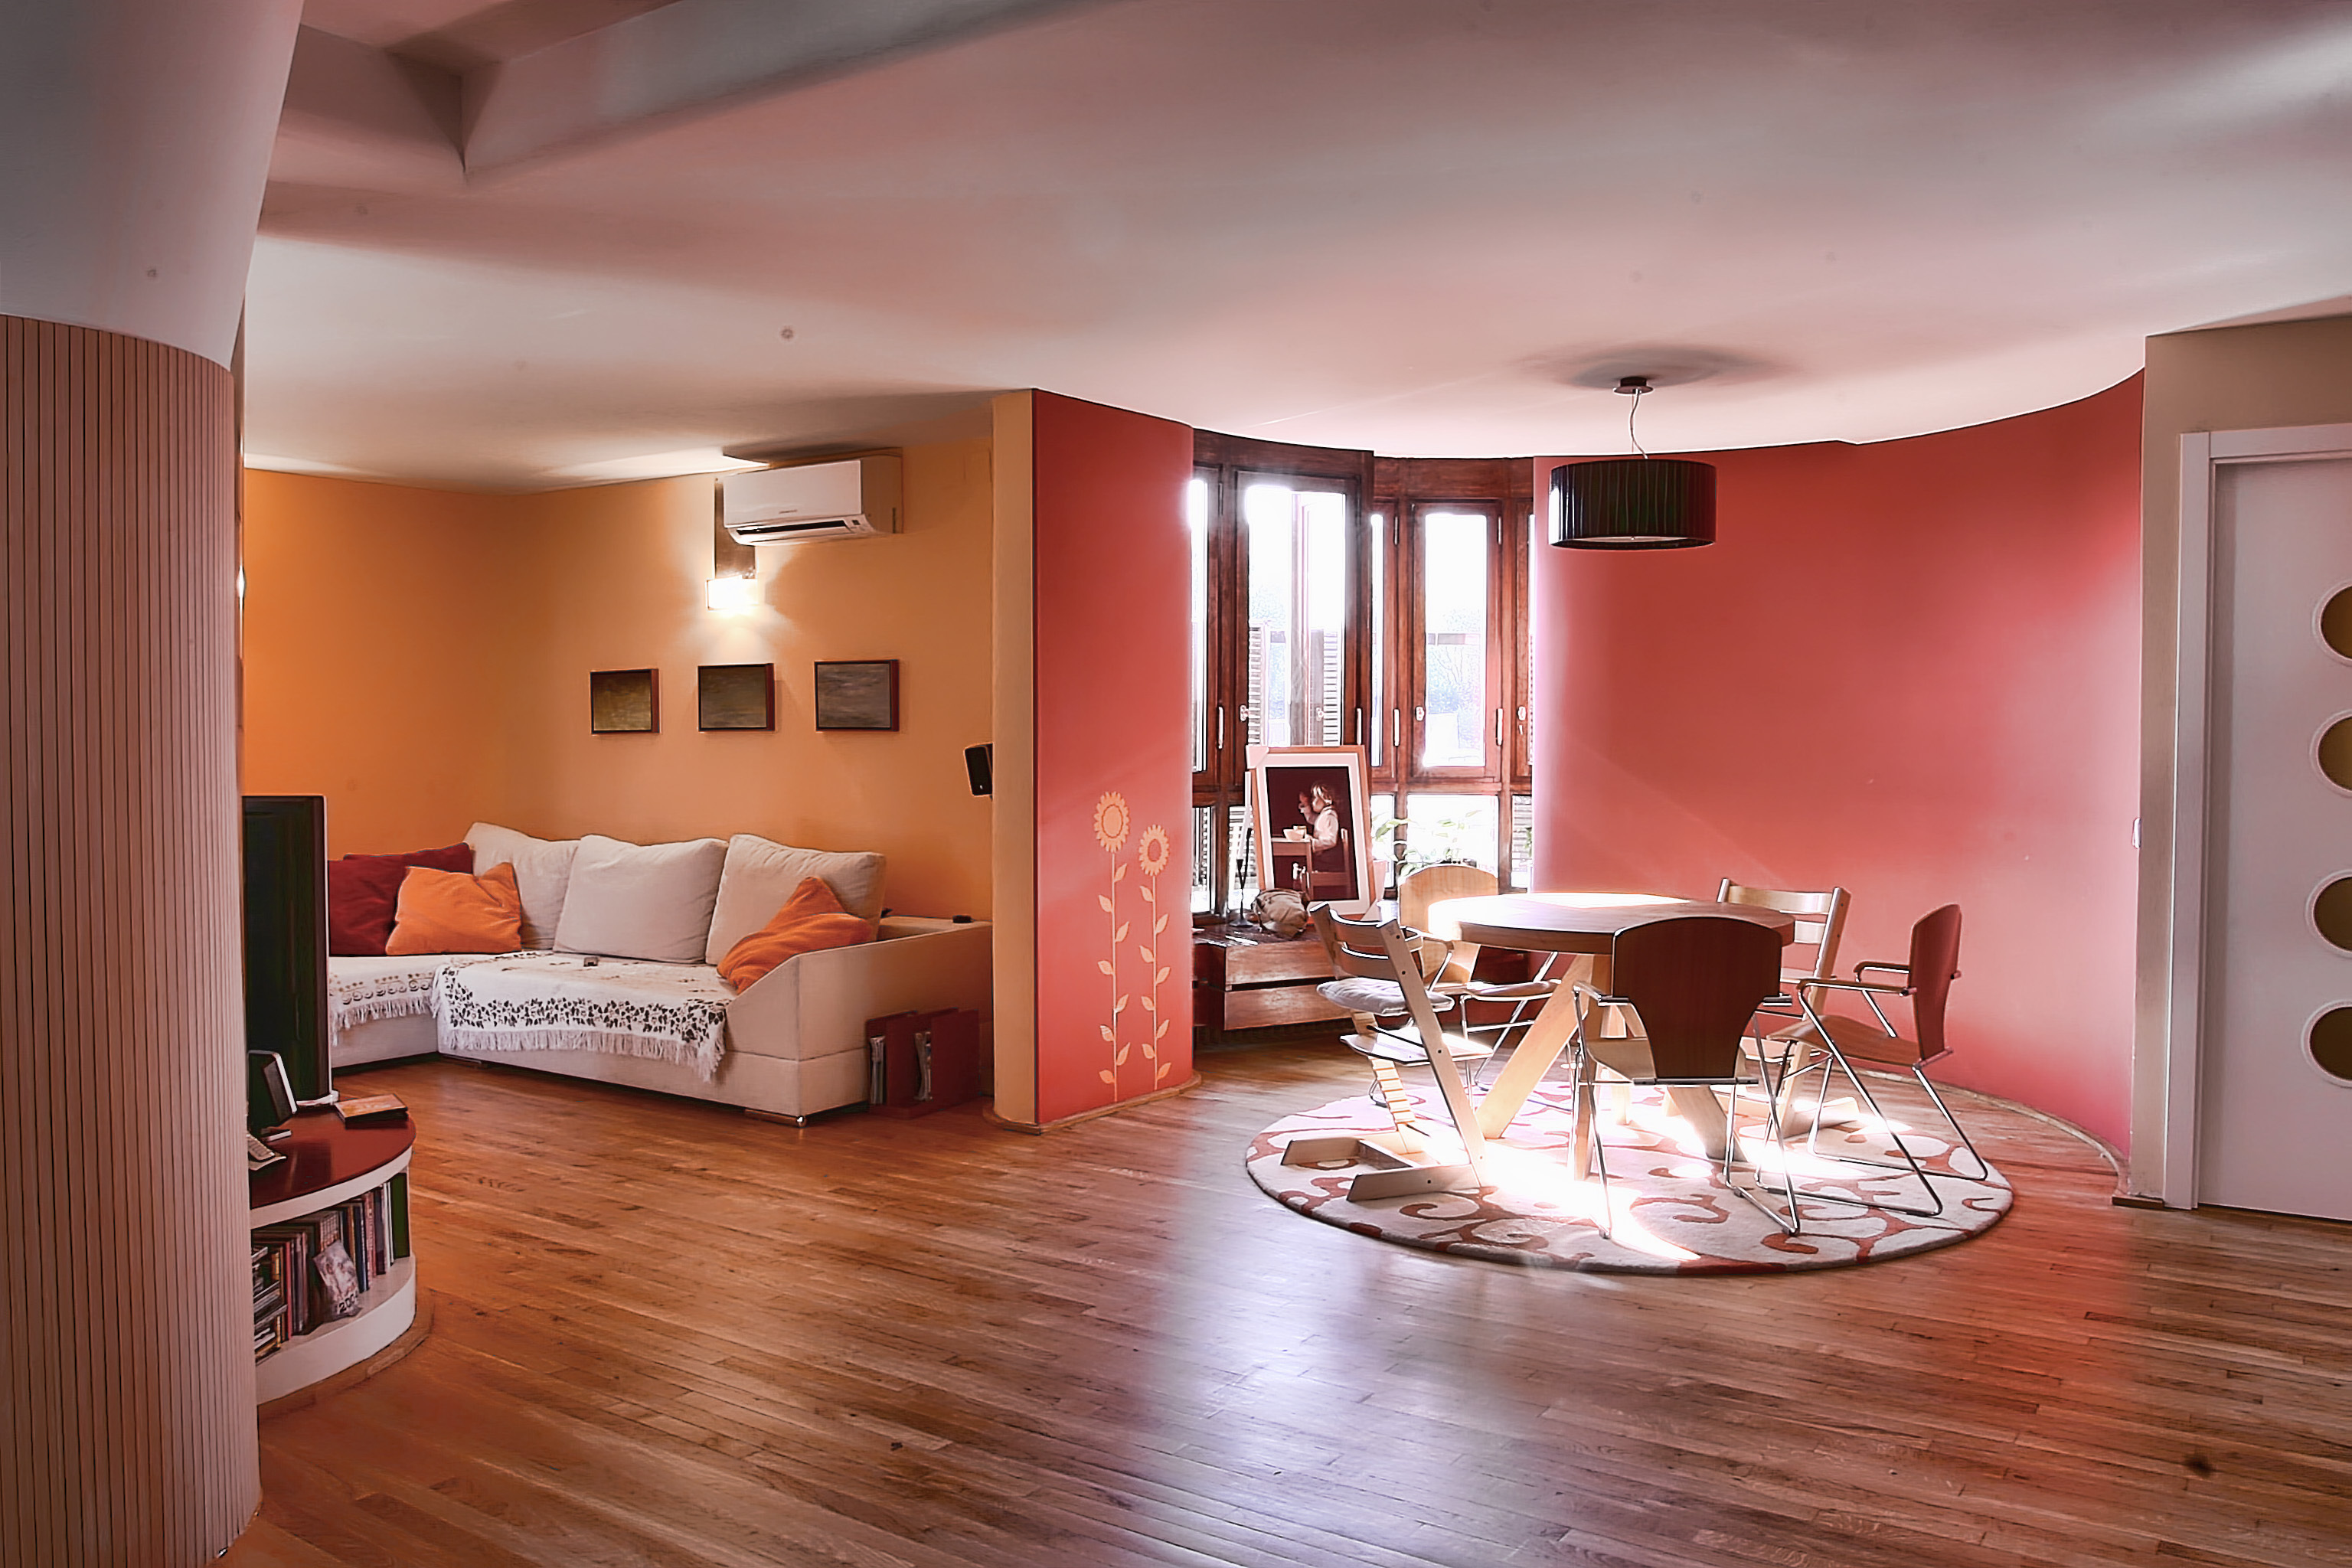 Комната которая просто есть. Красивая квартира. Интерьер жилой комнаты. Персиковый цвет стен в интерьере. Дизайн квартиры.